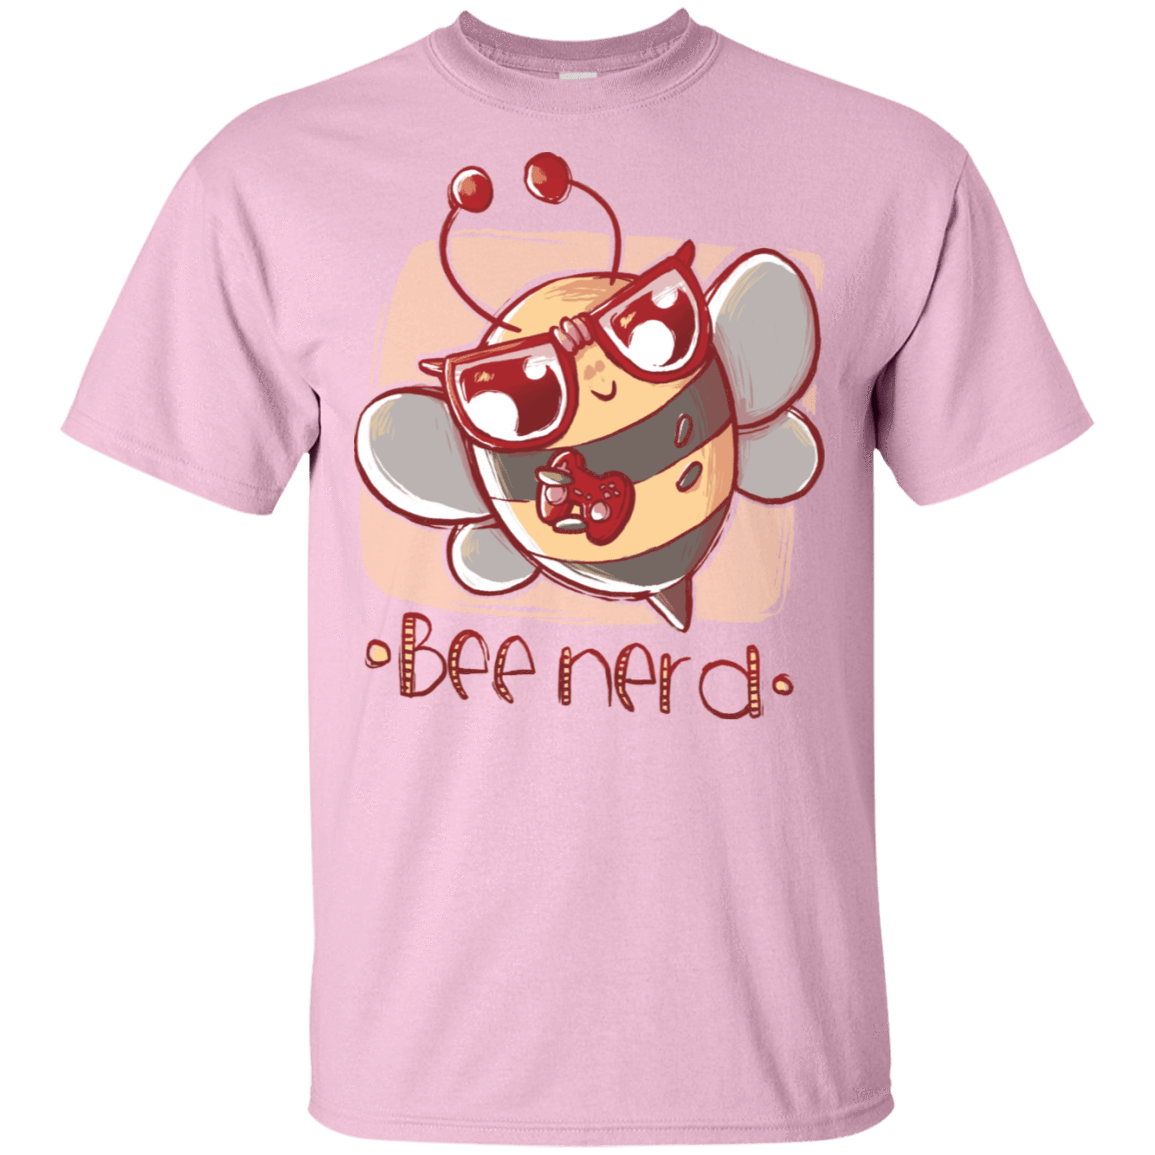 T-Shirts Light Pink / S BEE Nerd T-Shirt